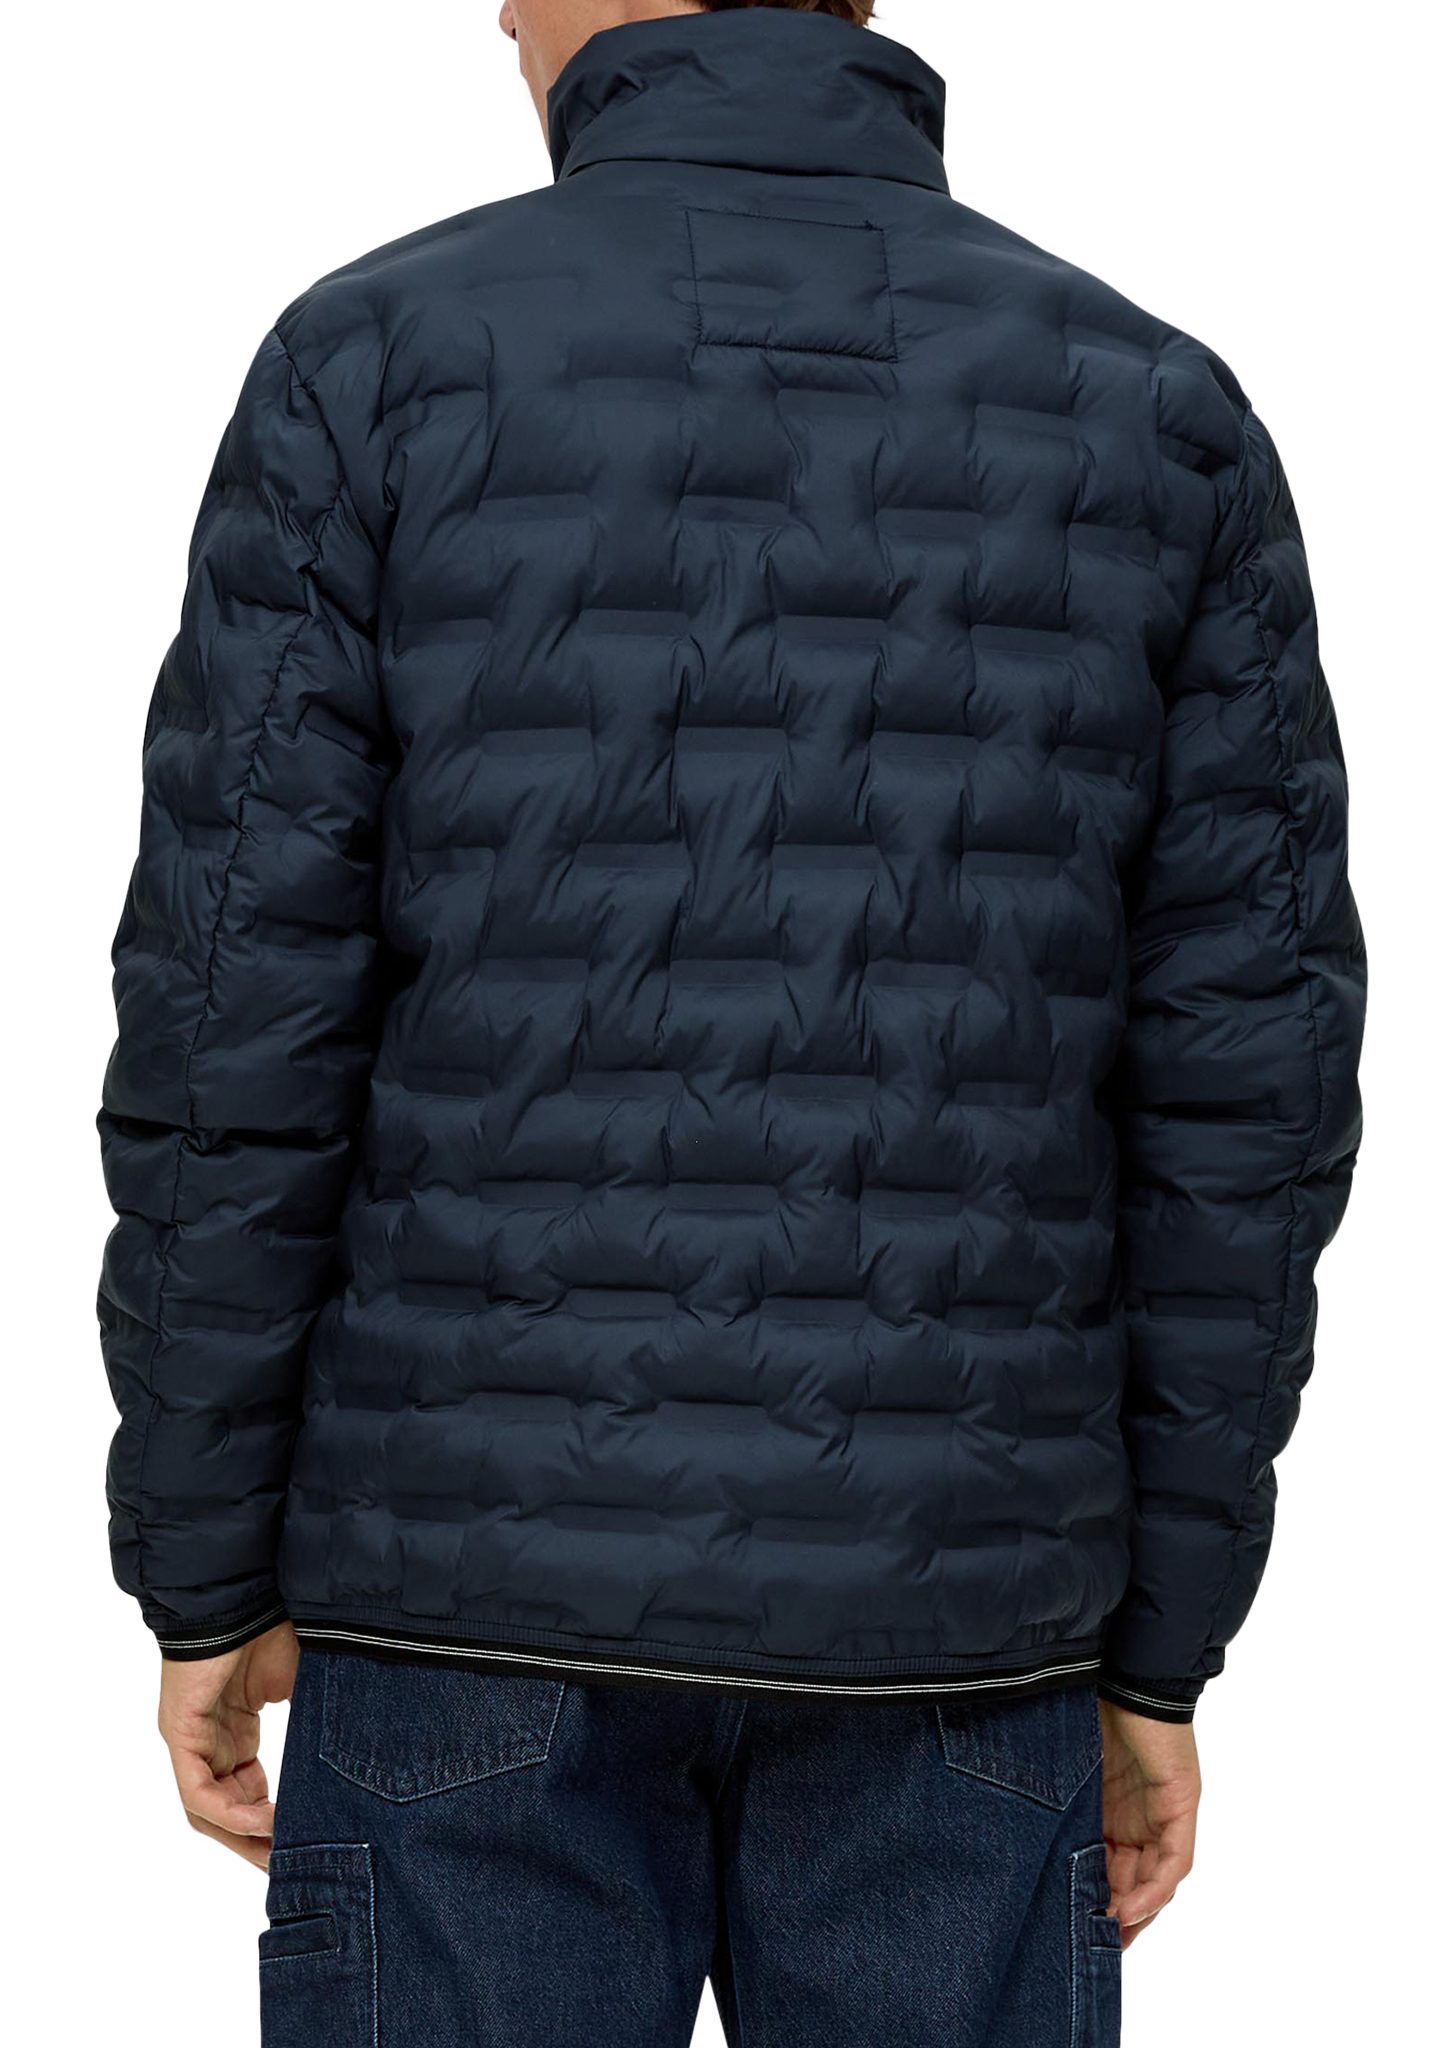 Allwetterjacke Jacke Reißverschlusstaschen mit s.Oliver navy Logo